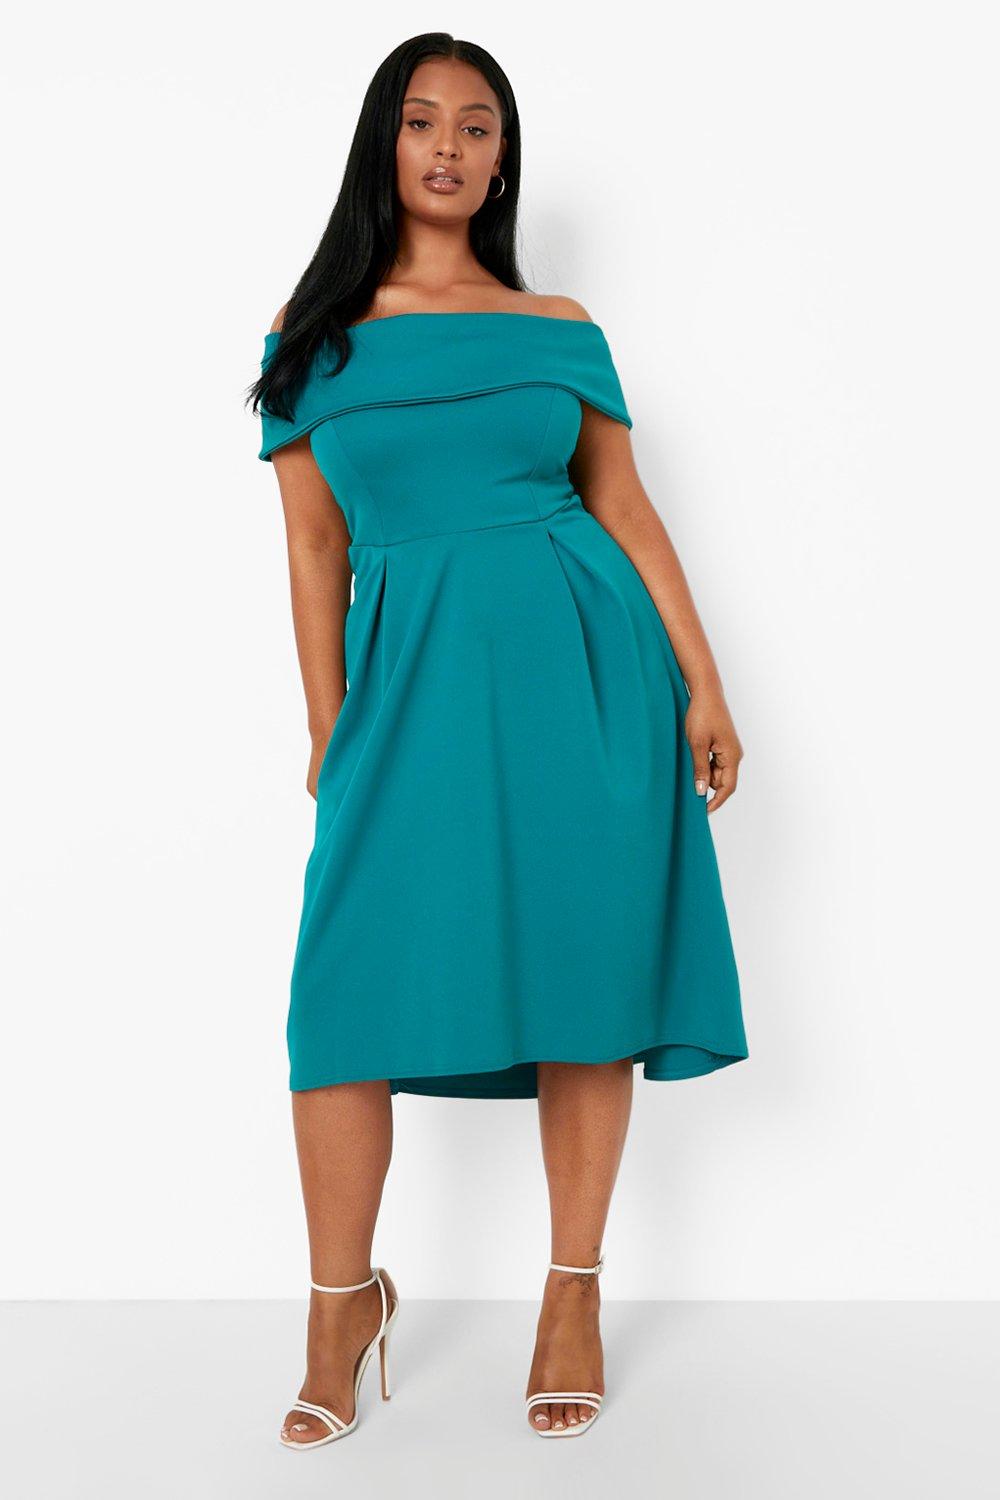 Plus Size Green Dress | Green Plus Size ...